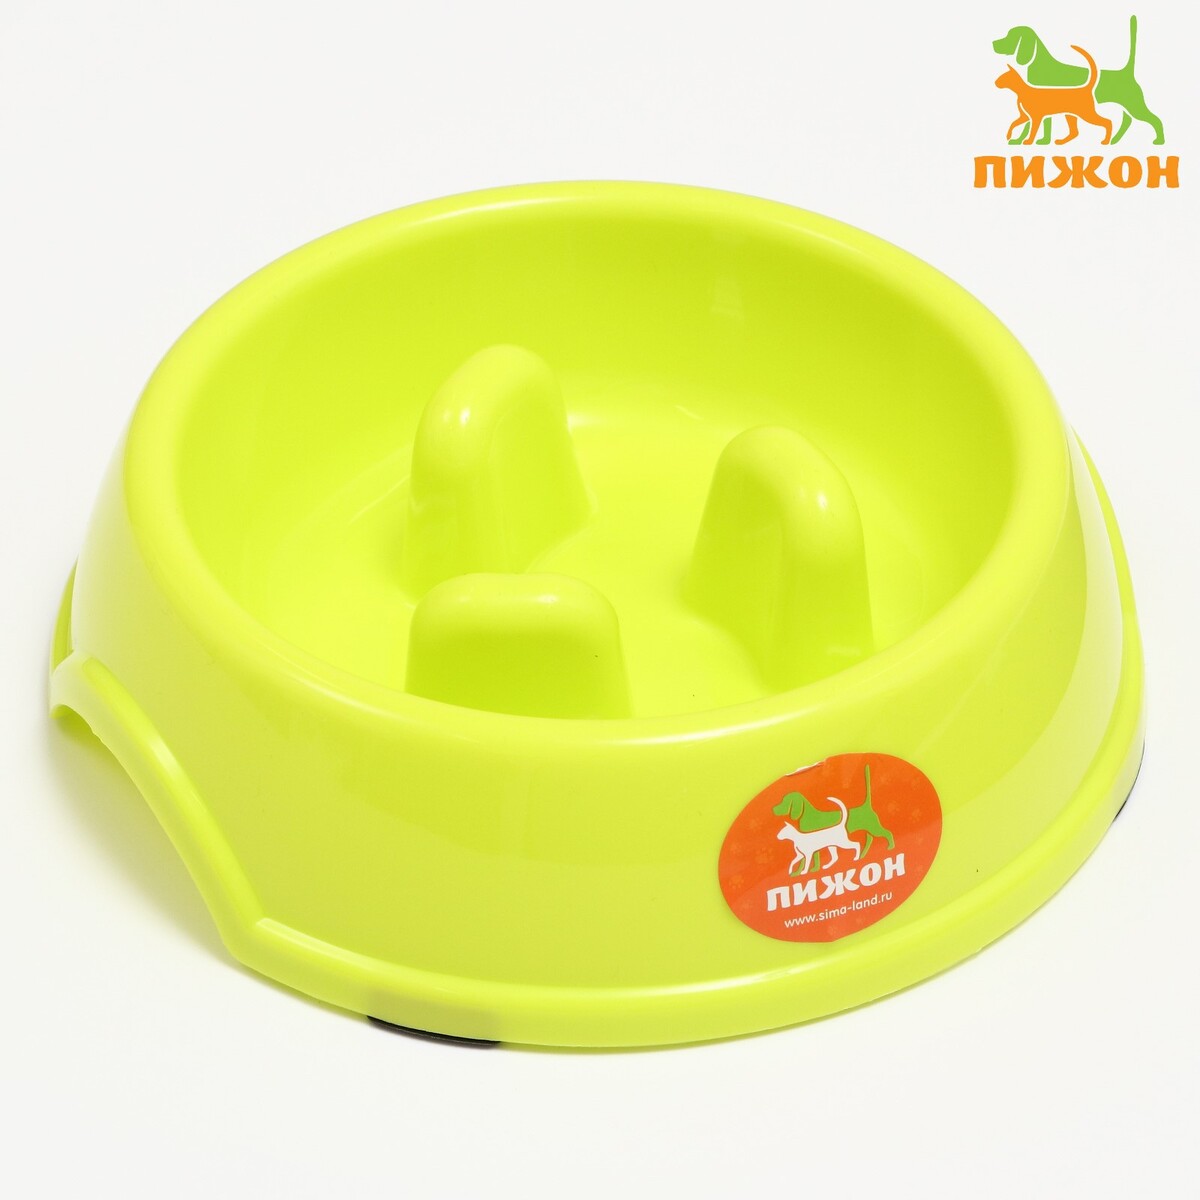 Миска пластиковая медленное кормление18 х 18,5 х 5,5 см, зеленая миска для медленного кормления